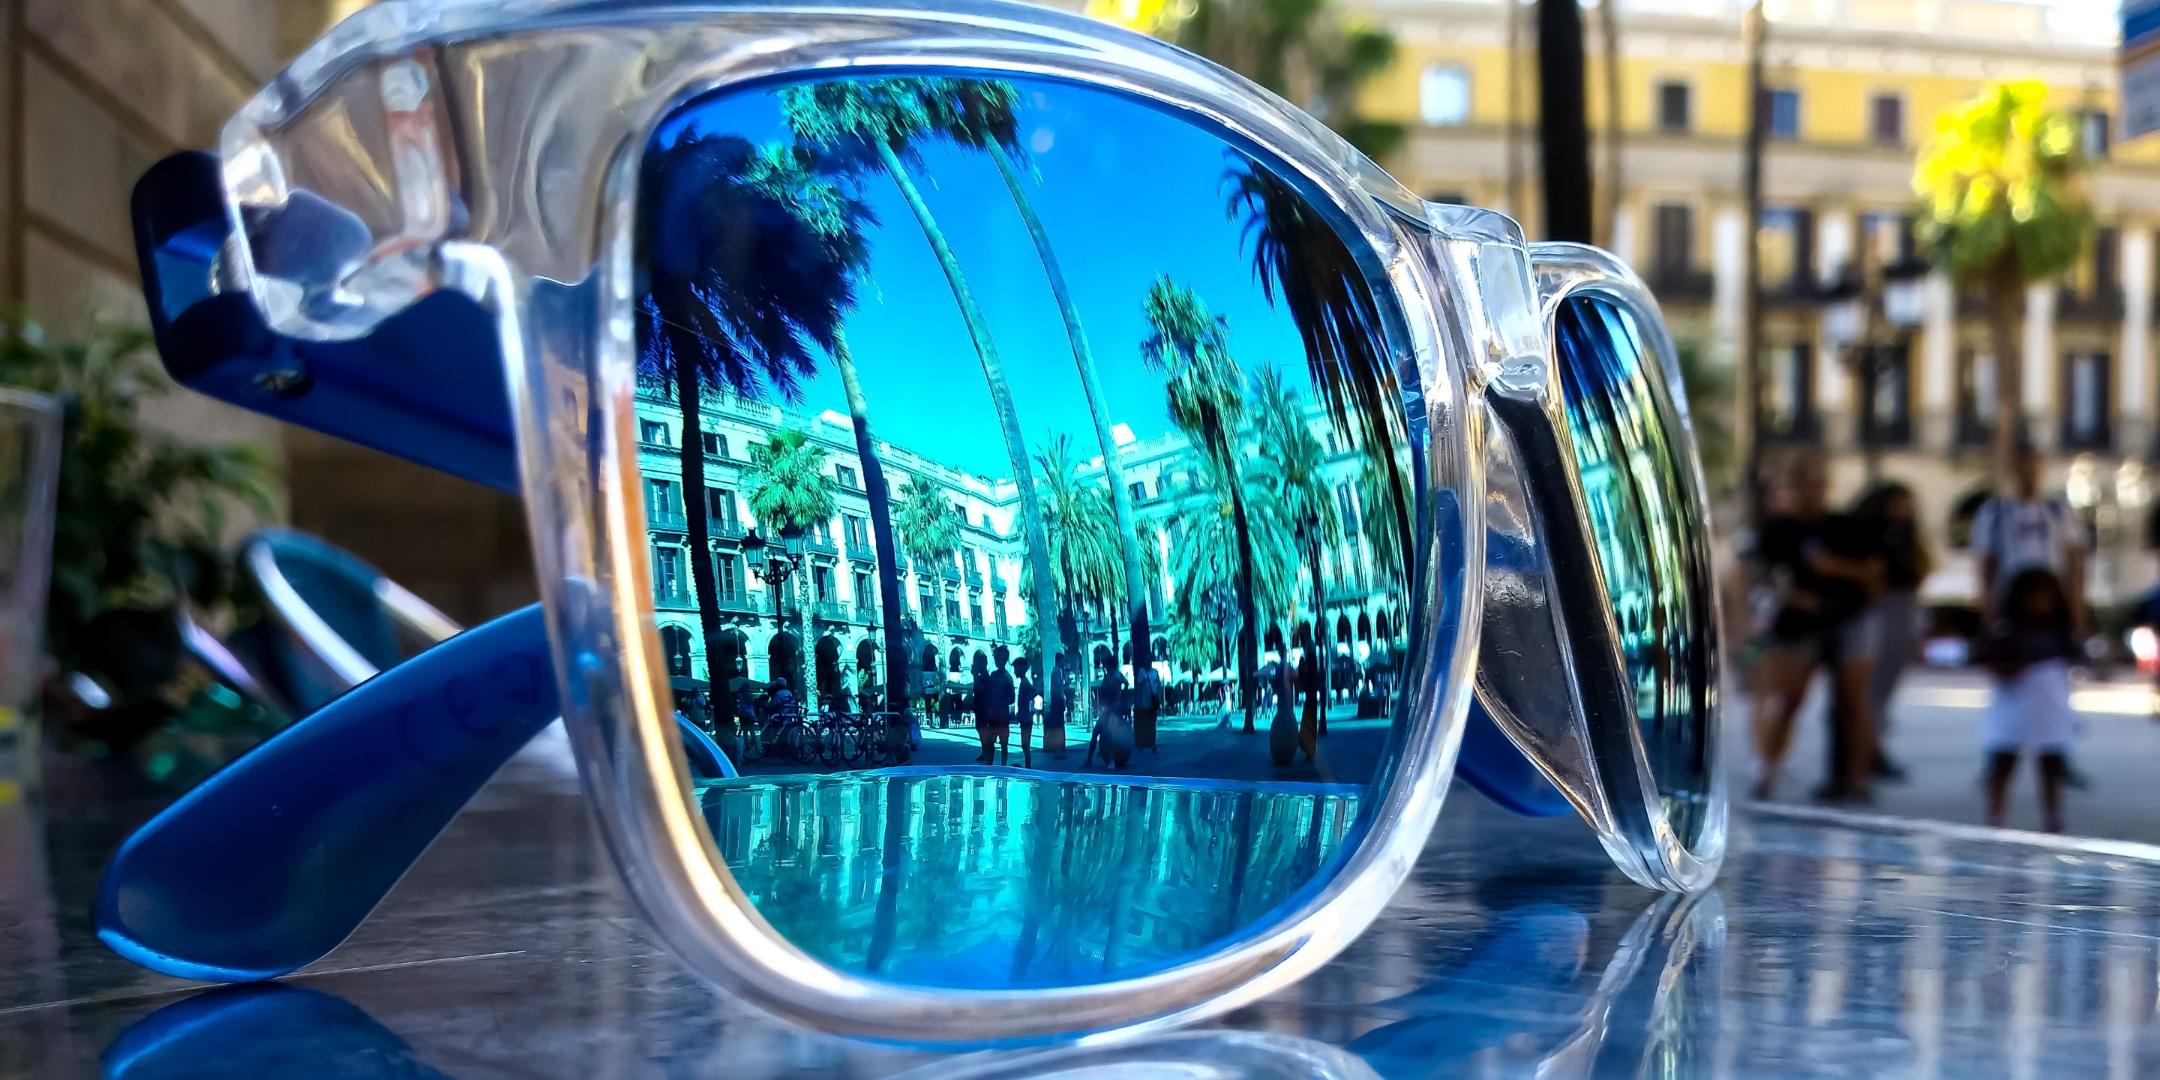 Eine Sonnenbrille liegt draußen auf einem Glastisch. In ihr spiegeln sich Palmen, Häuser und Menschen bei blauem Himmel.